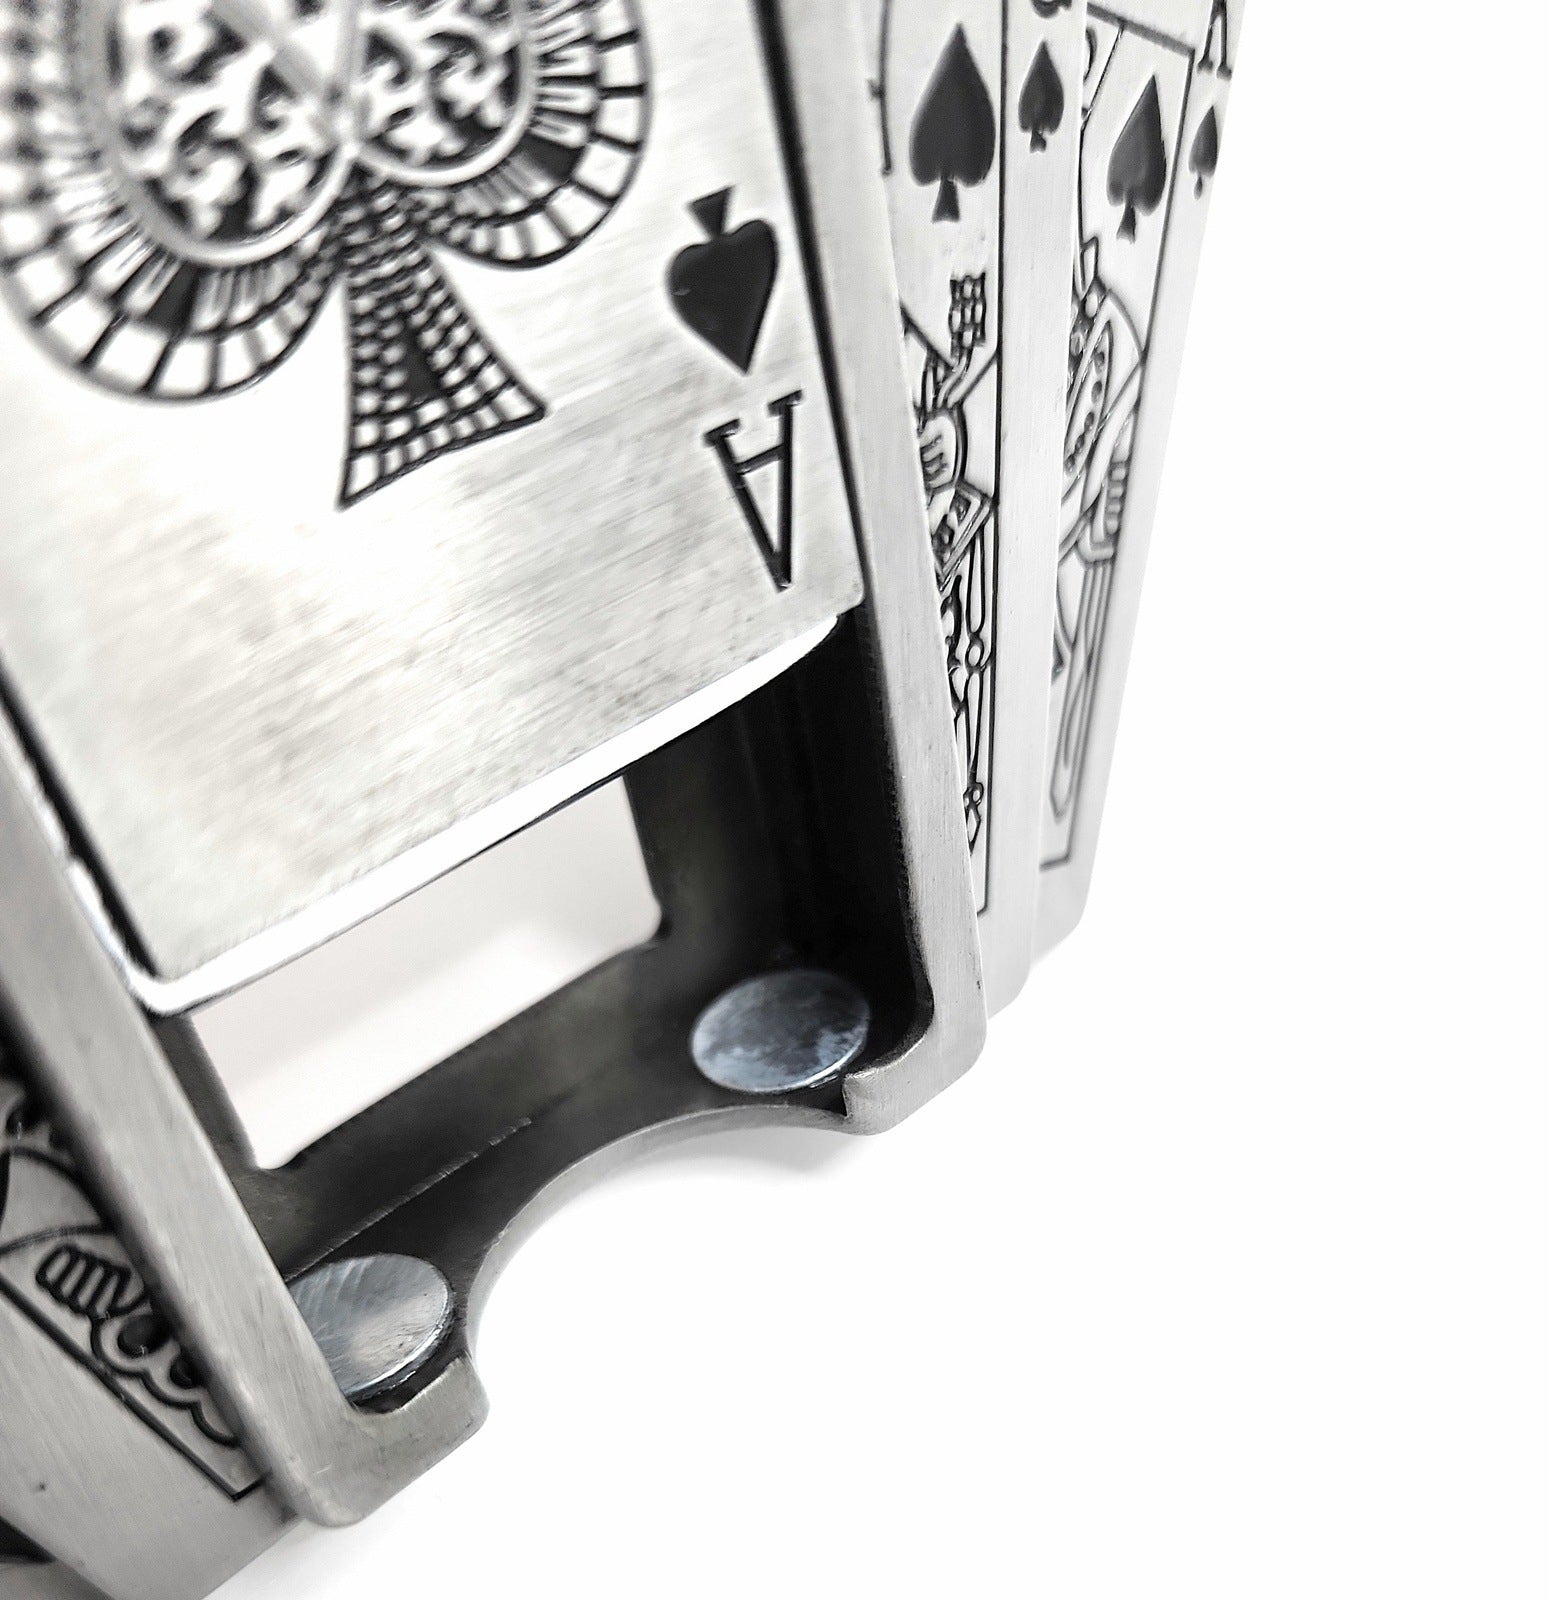 Poker Royal Flush Belt Buckle Lighter Holder WITH Ace of Spades LIGHTER